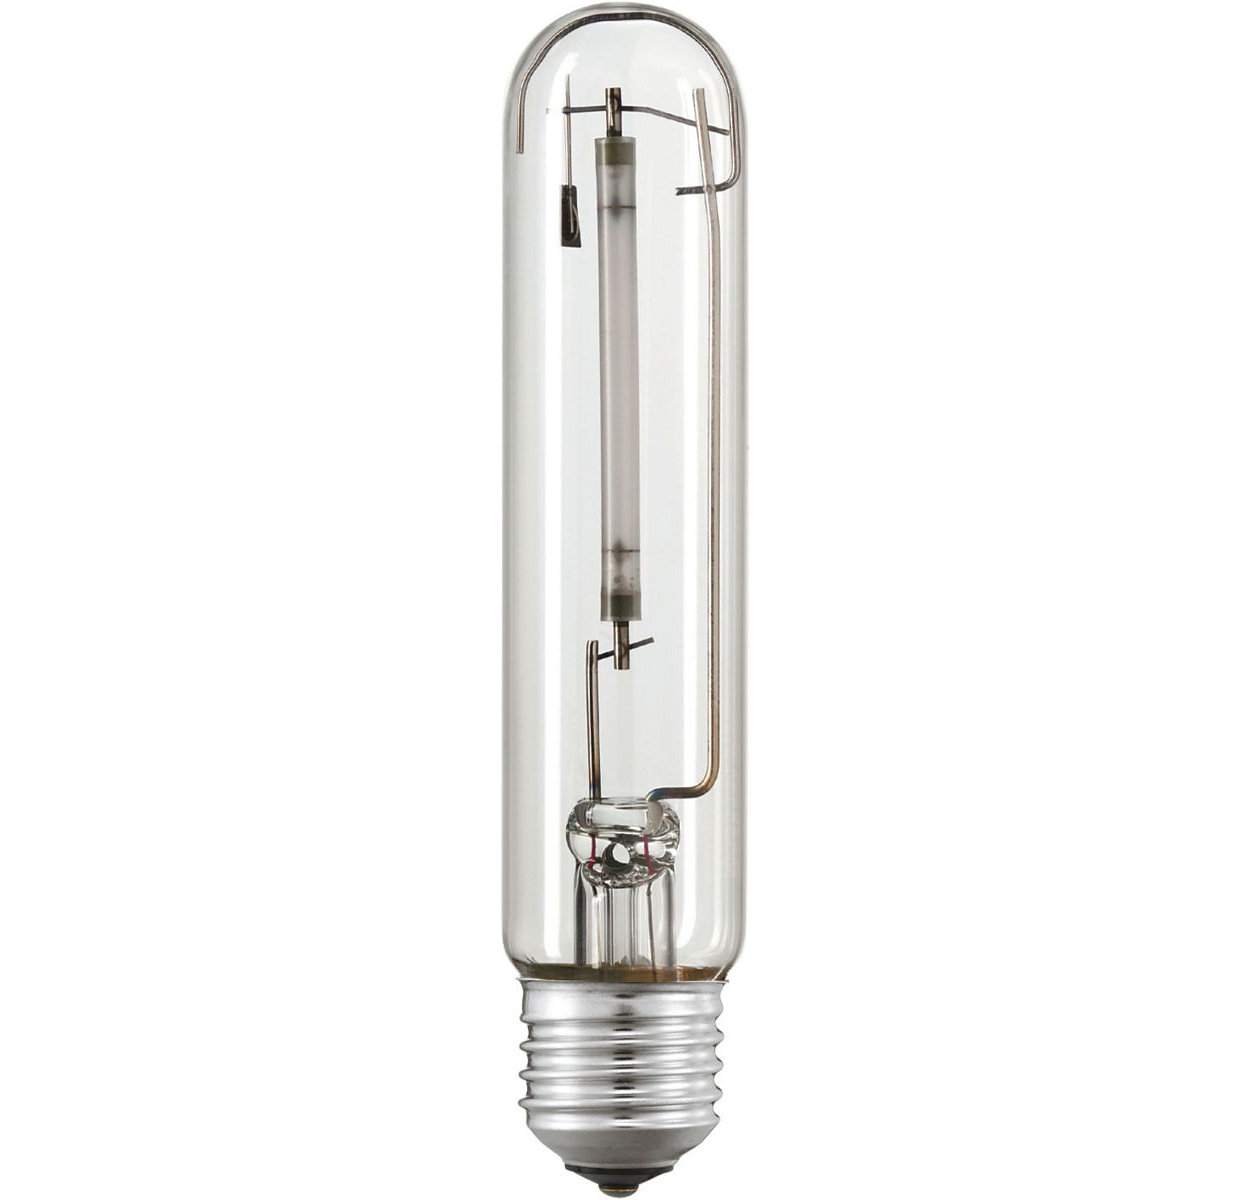 12 x Philips MASTER SON-T PIA Plus 70 W E27 ES sodium haute pression Ampoule Lampe 